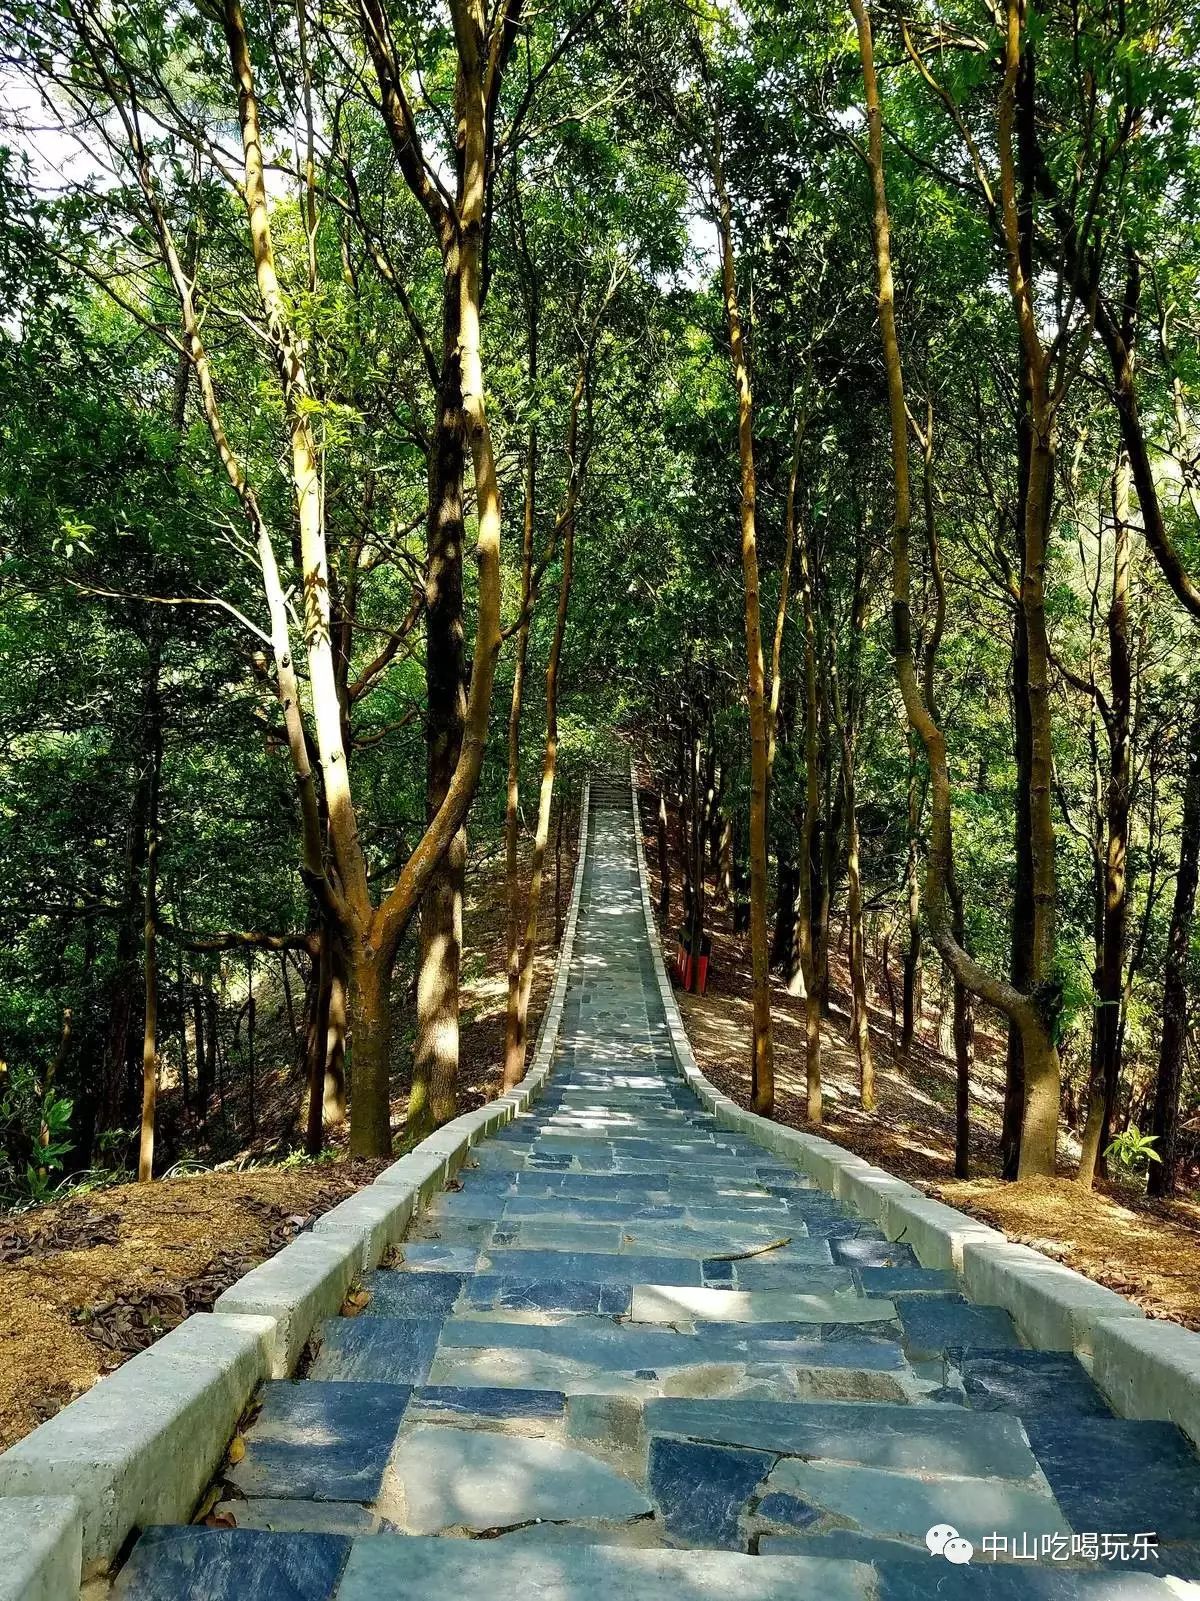 中山市首个森林公园--田心森林公园,位于五桂山主峰脚下